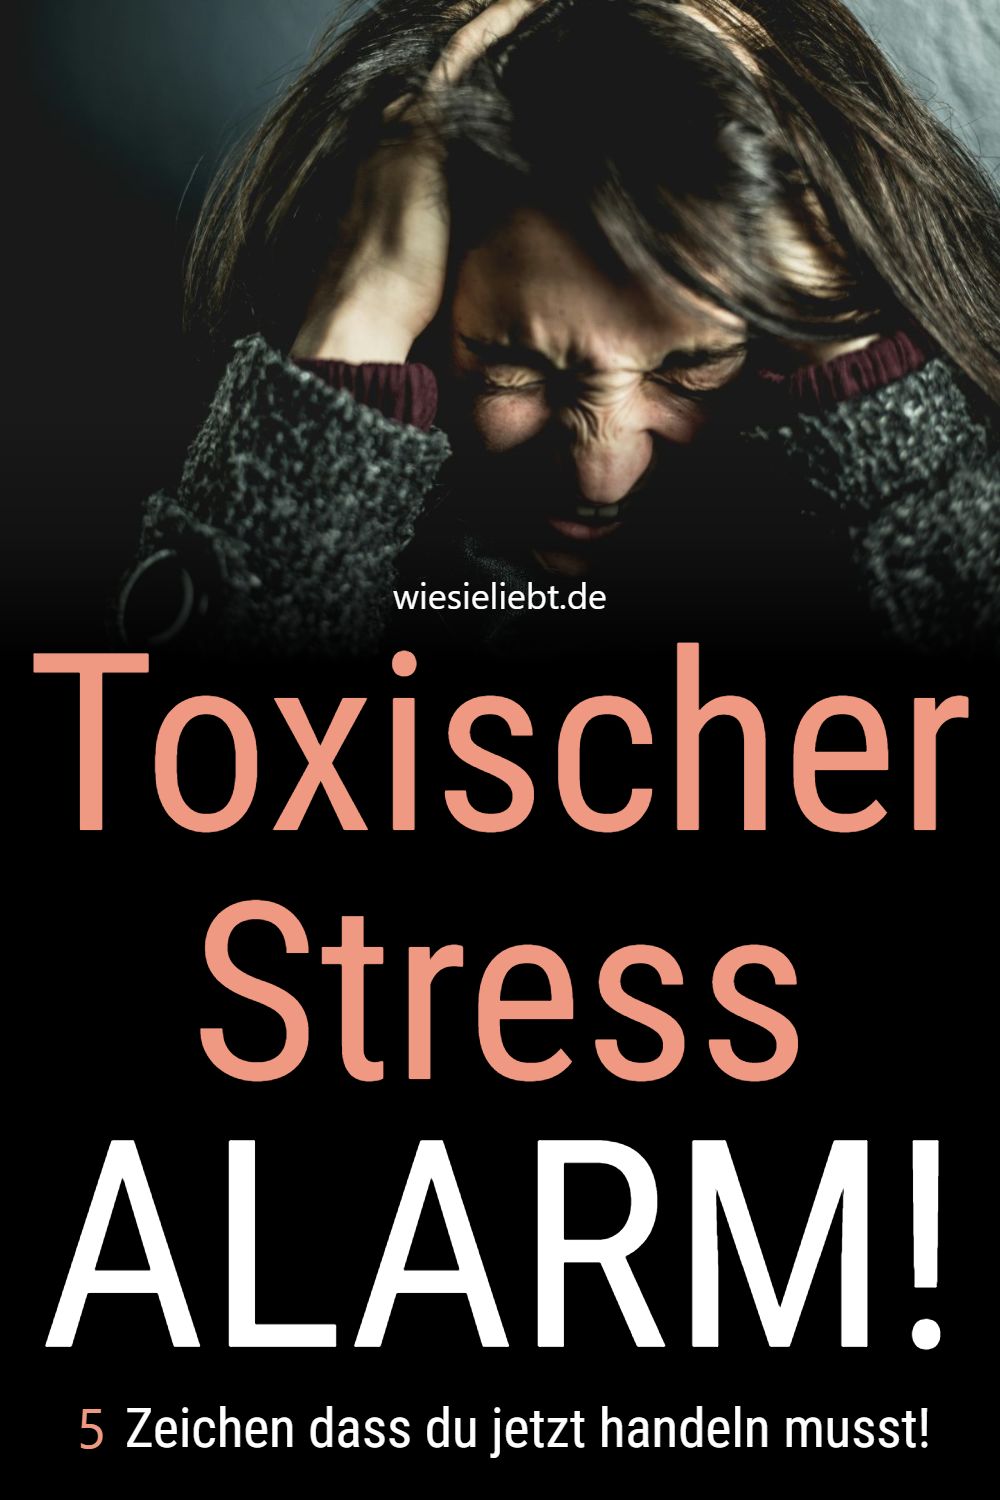 Toxischer Stress ALARM! 5 Zeichen dass du jetzt handeln musst!